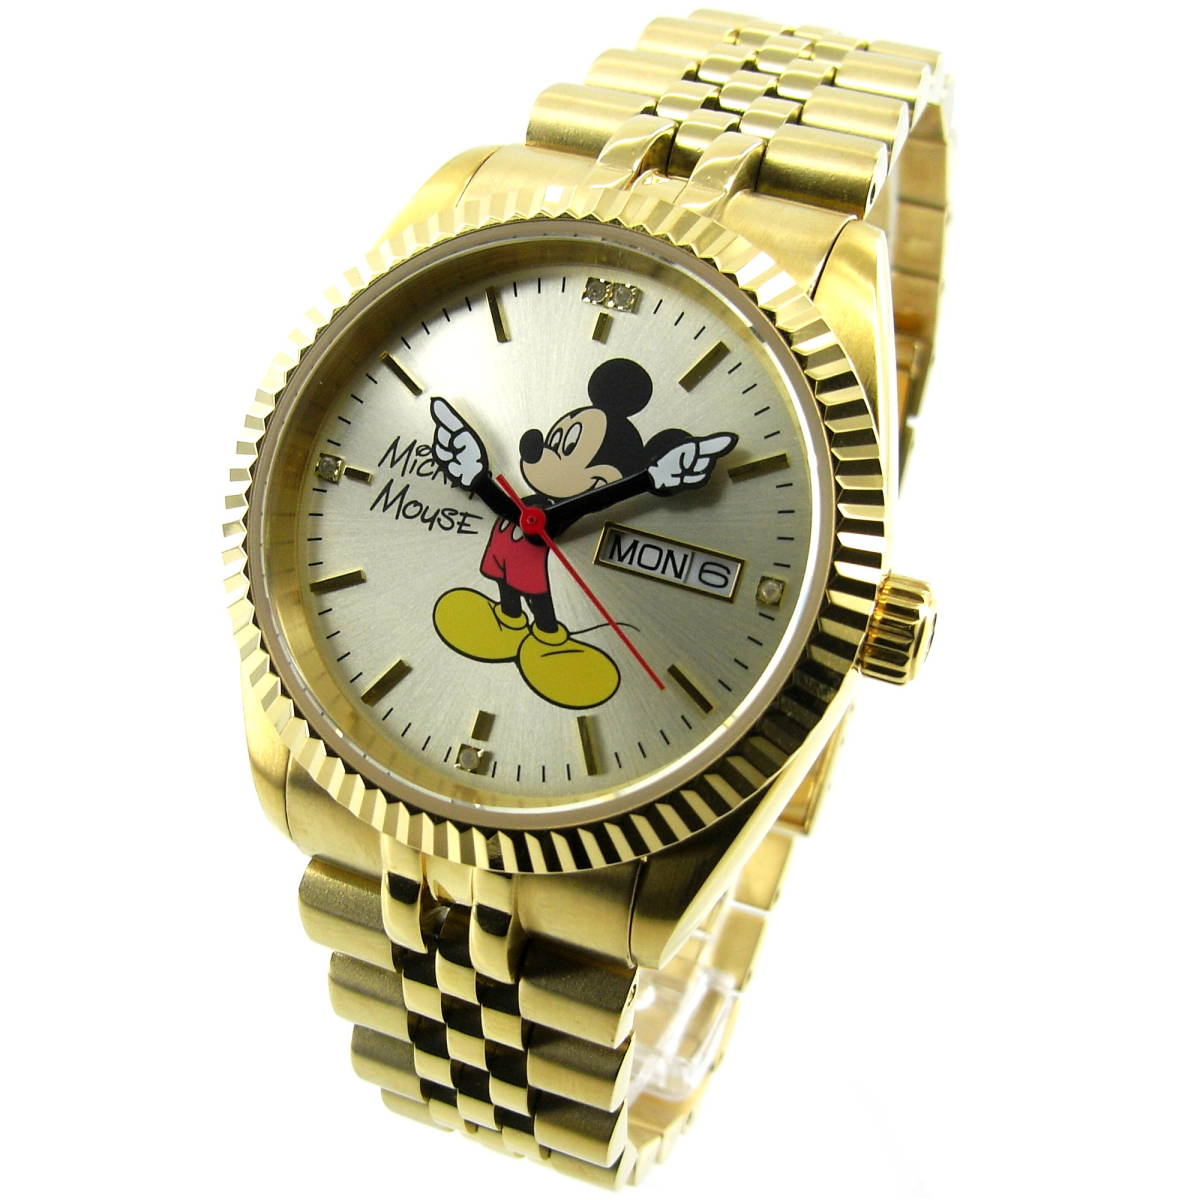  Disney наручные часы Mickey Mouse люкс модель mk-gold